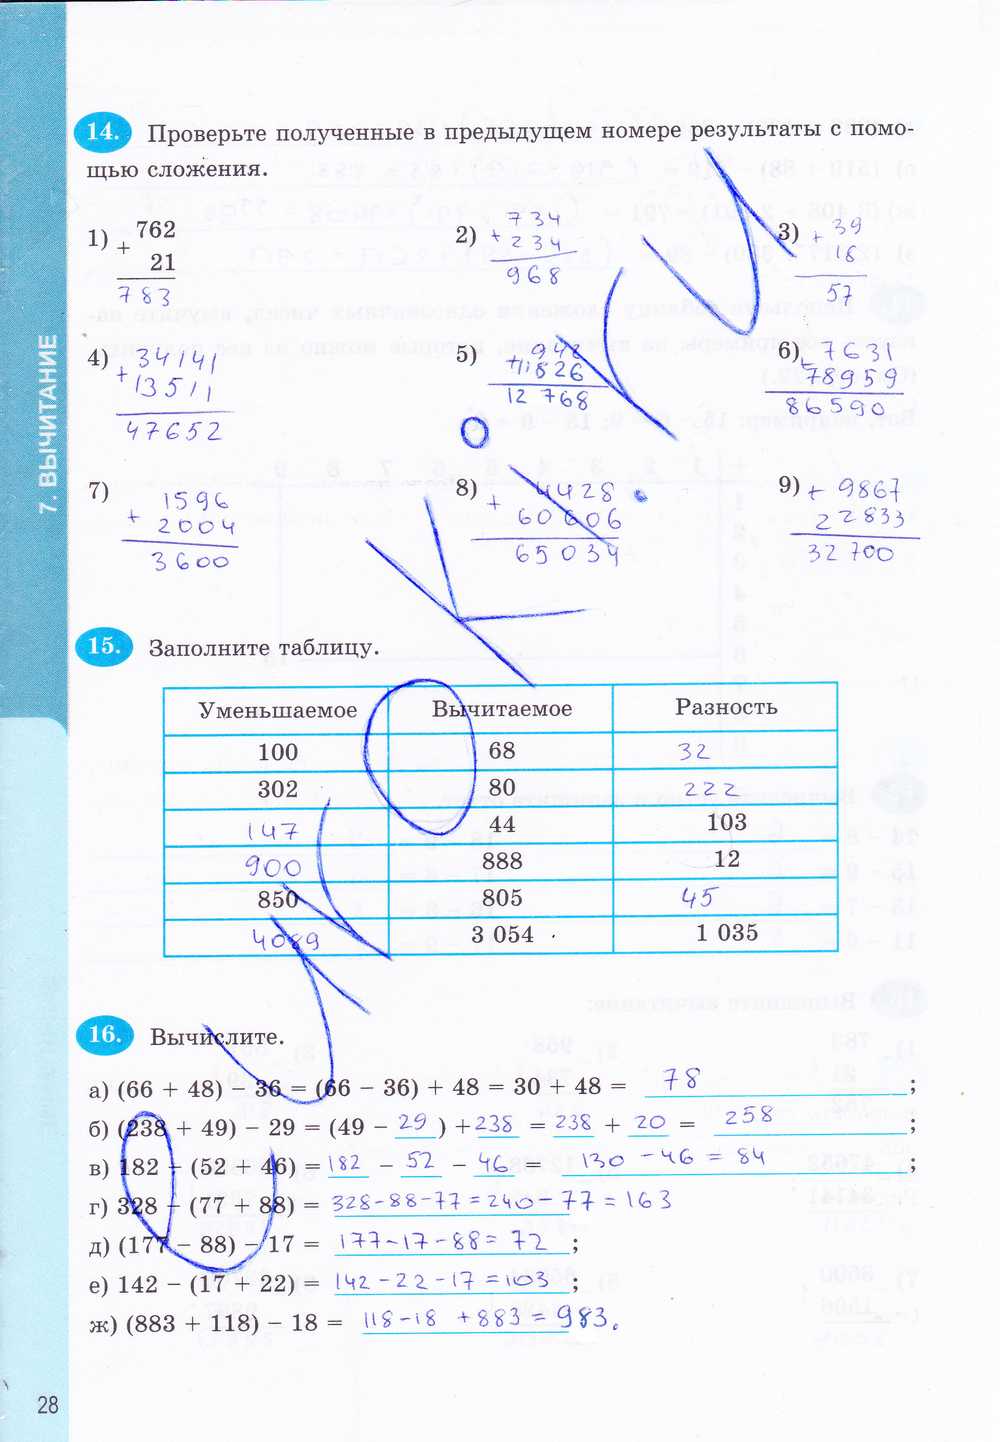 Ответы на рабочую тетрадь по математике 6 класс ерина гдз онлайн бесплатно и без закачки